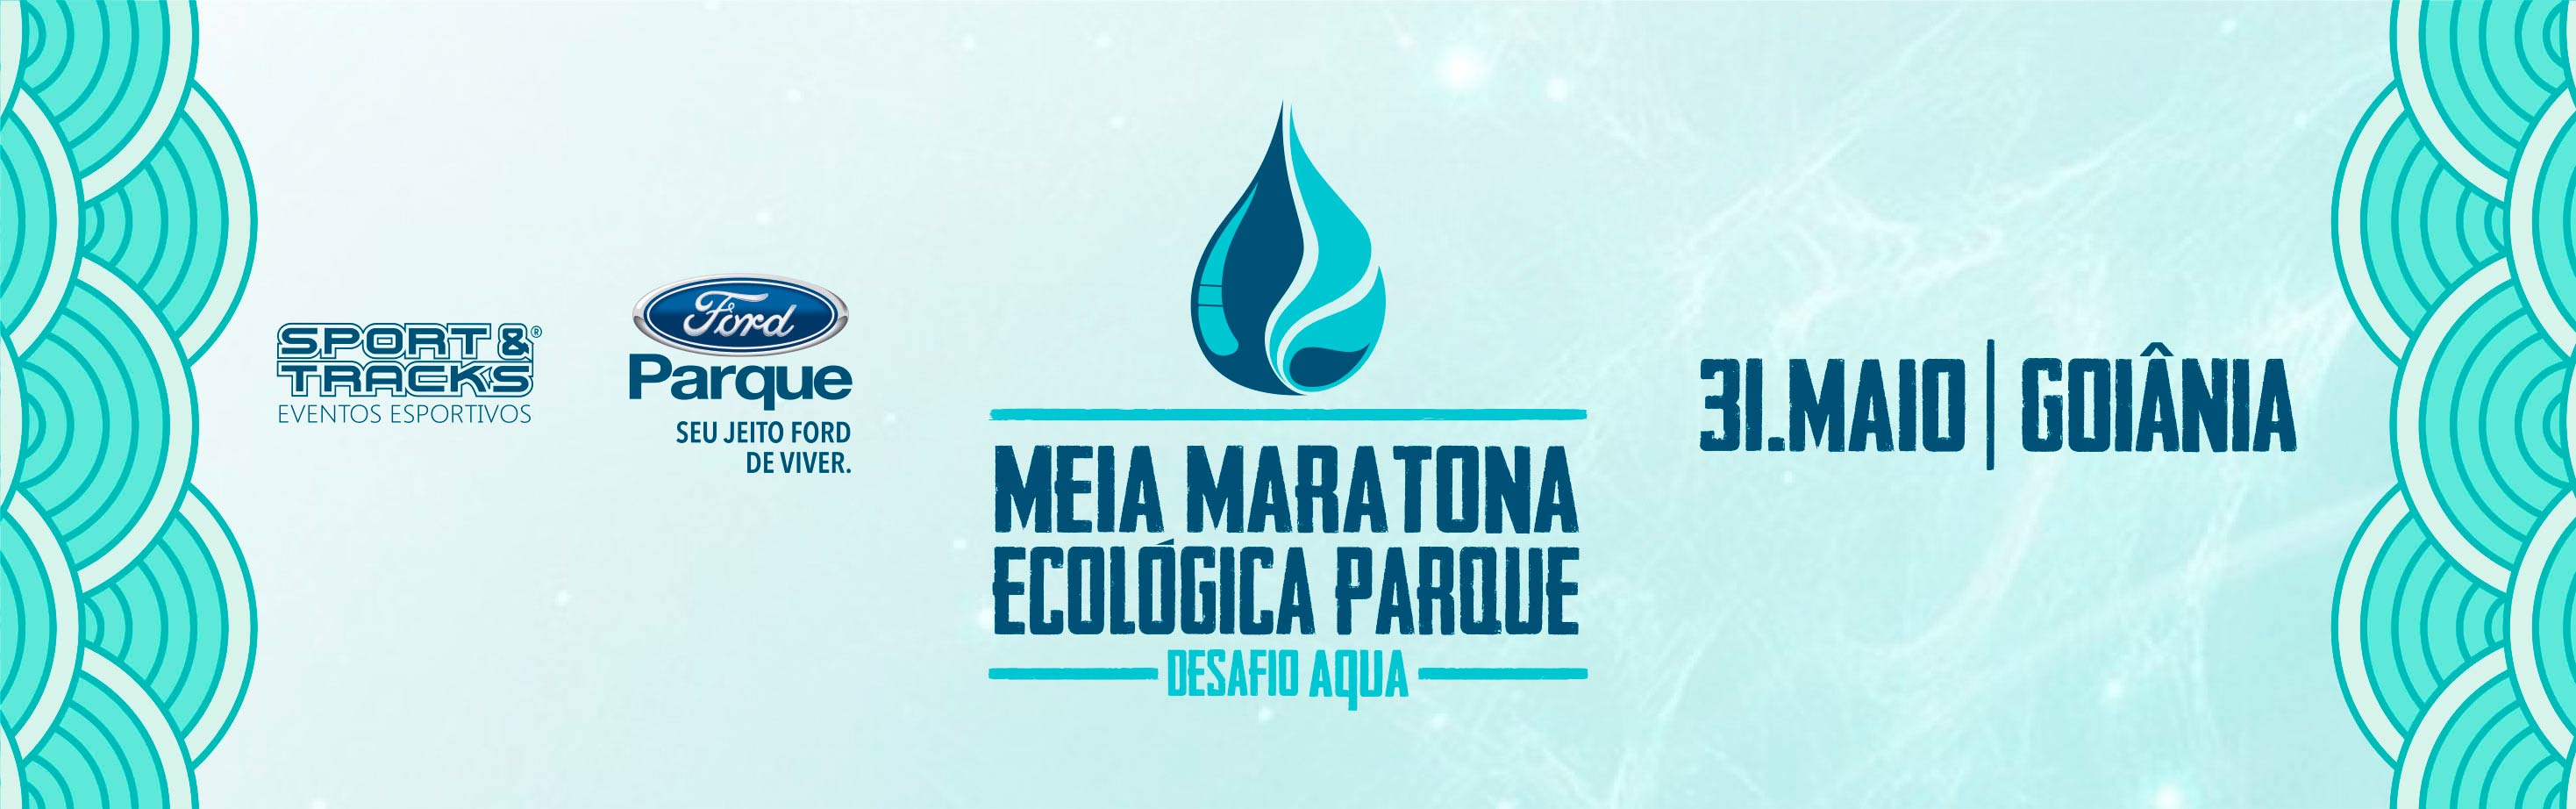 Meia Maratona Ecológica Parque 2015